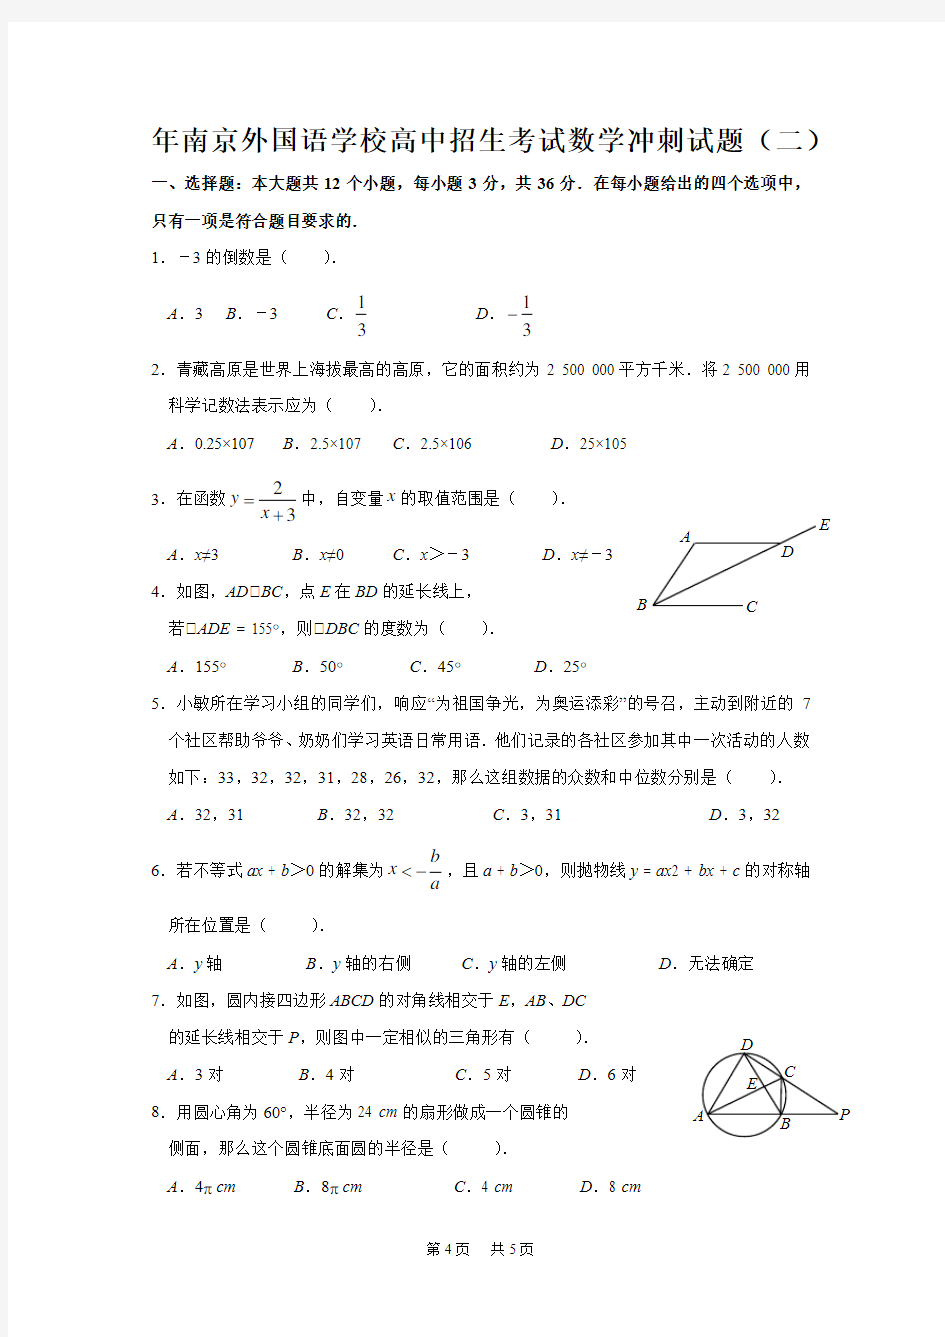 高中招生考试数学冲刺试题(2)及答案